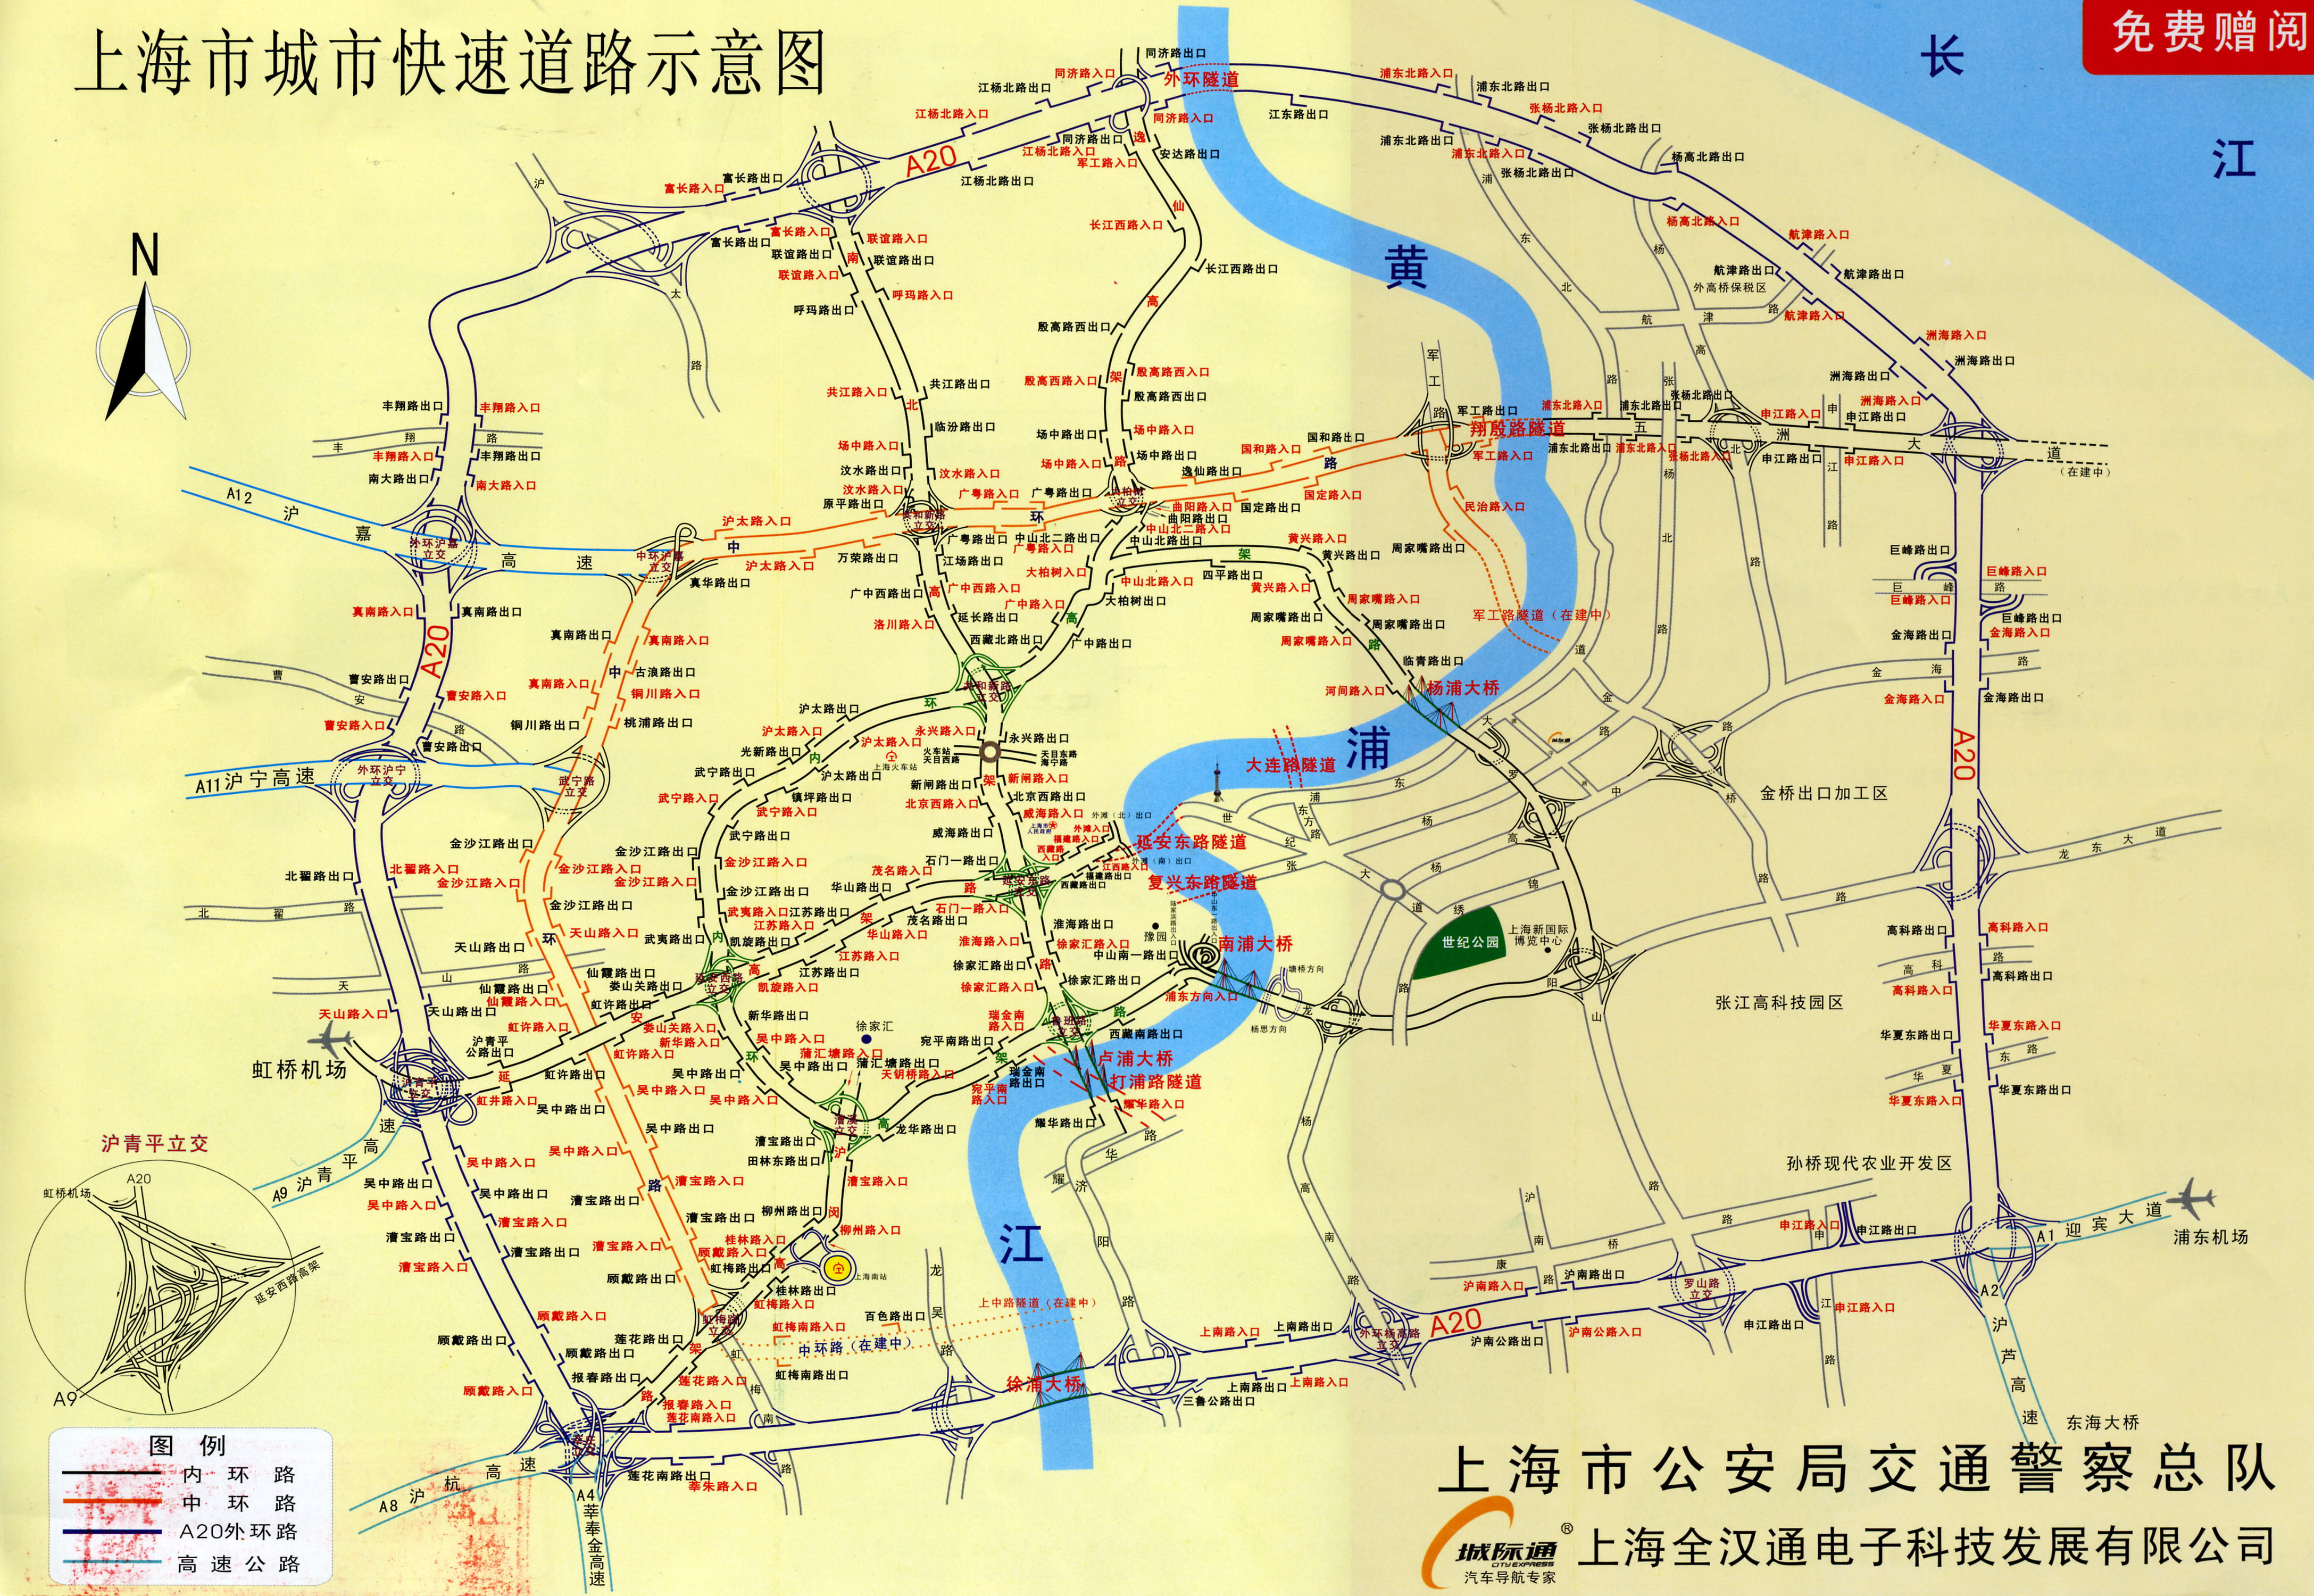 上海高架地图,又称上海城市高速快速道路图